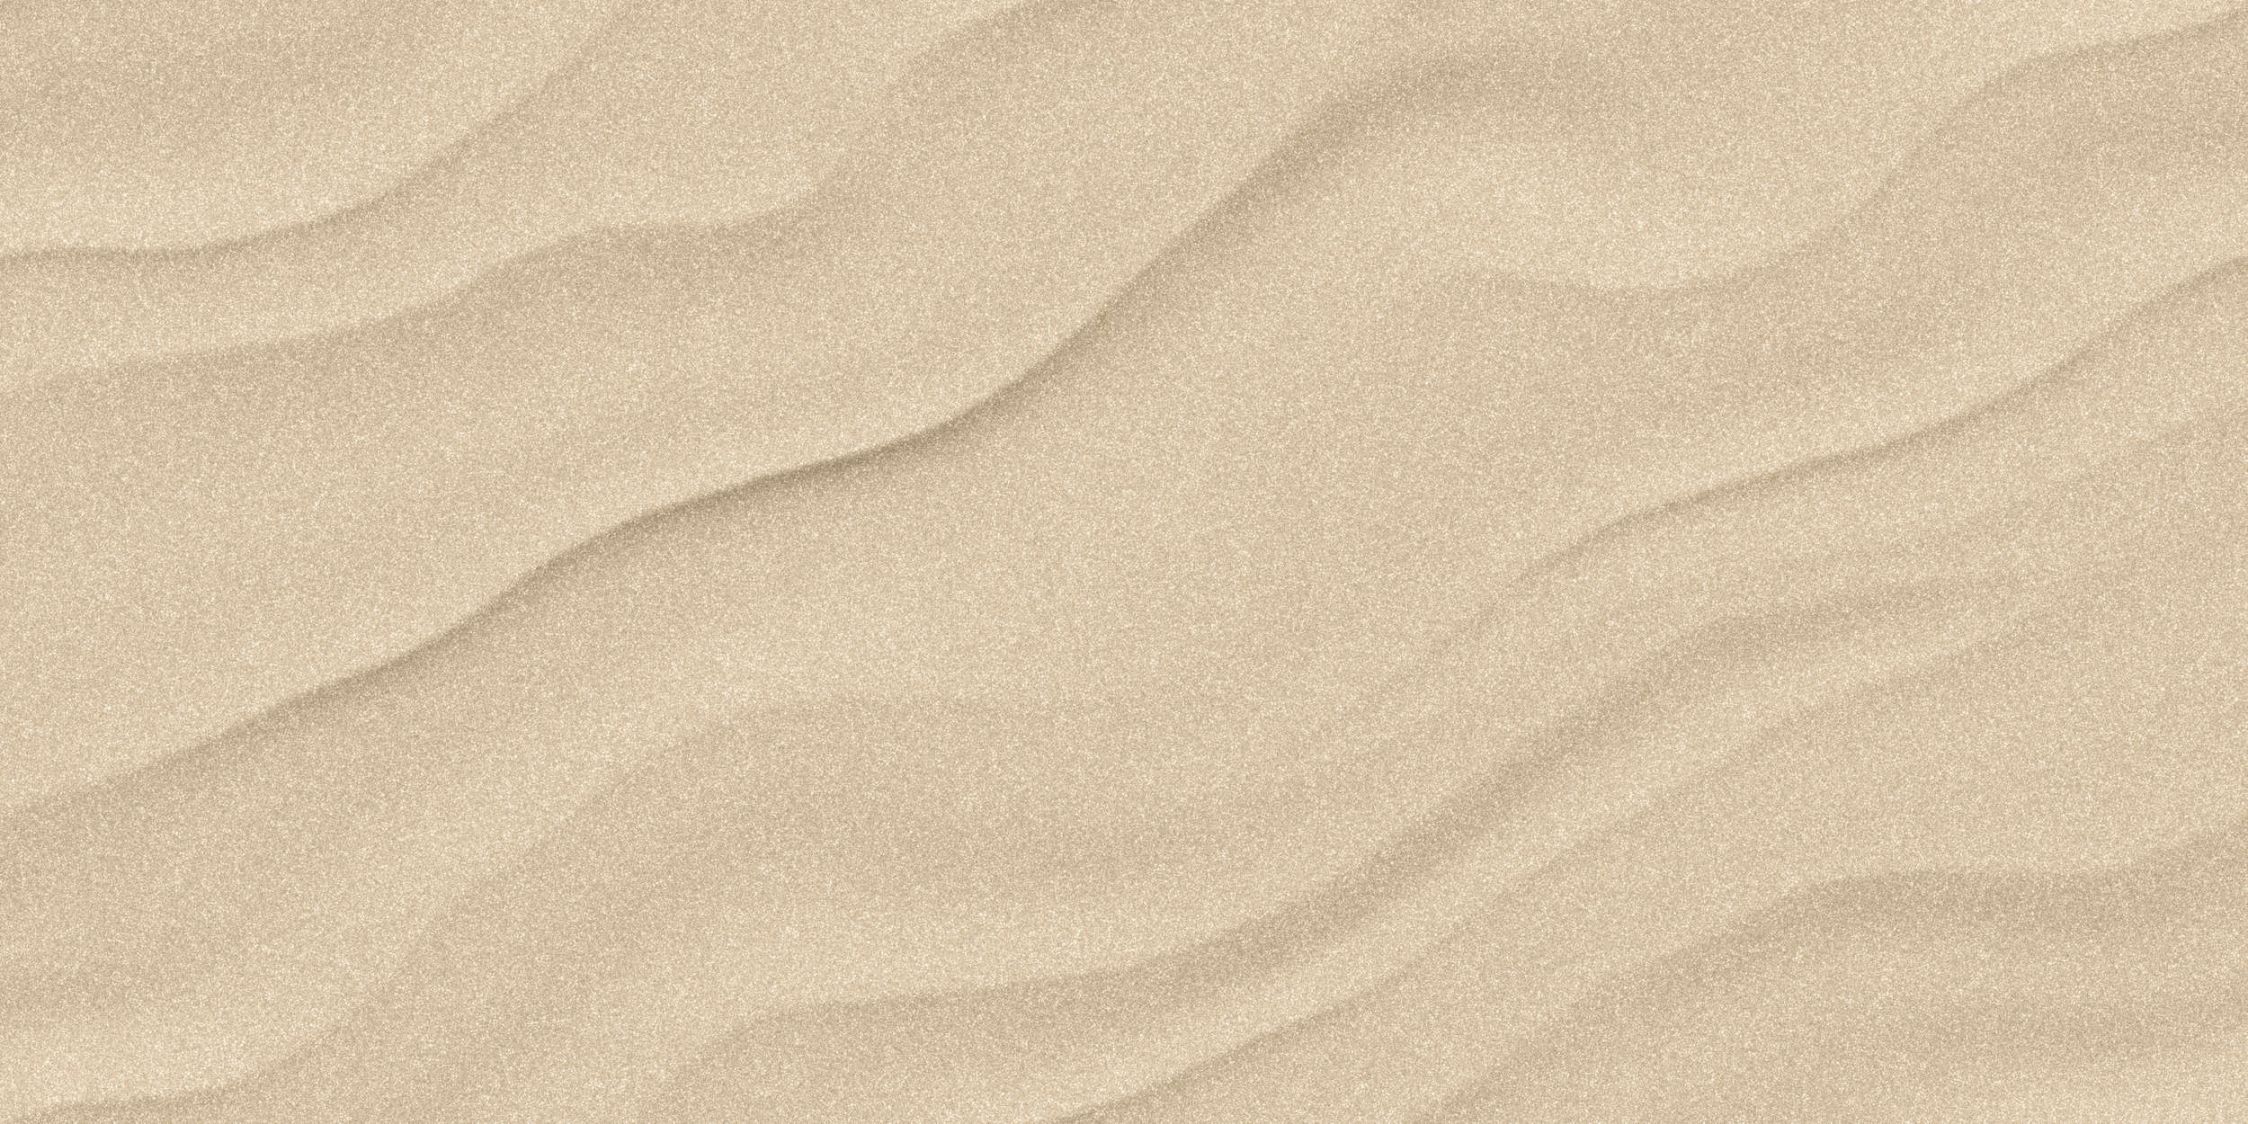             Fotomural »sahara« - Suelo arenoso del desierto con aspecto de papel hecho a mano - Material no tejido de alta calidad, liso y ligeramente brillante
        